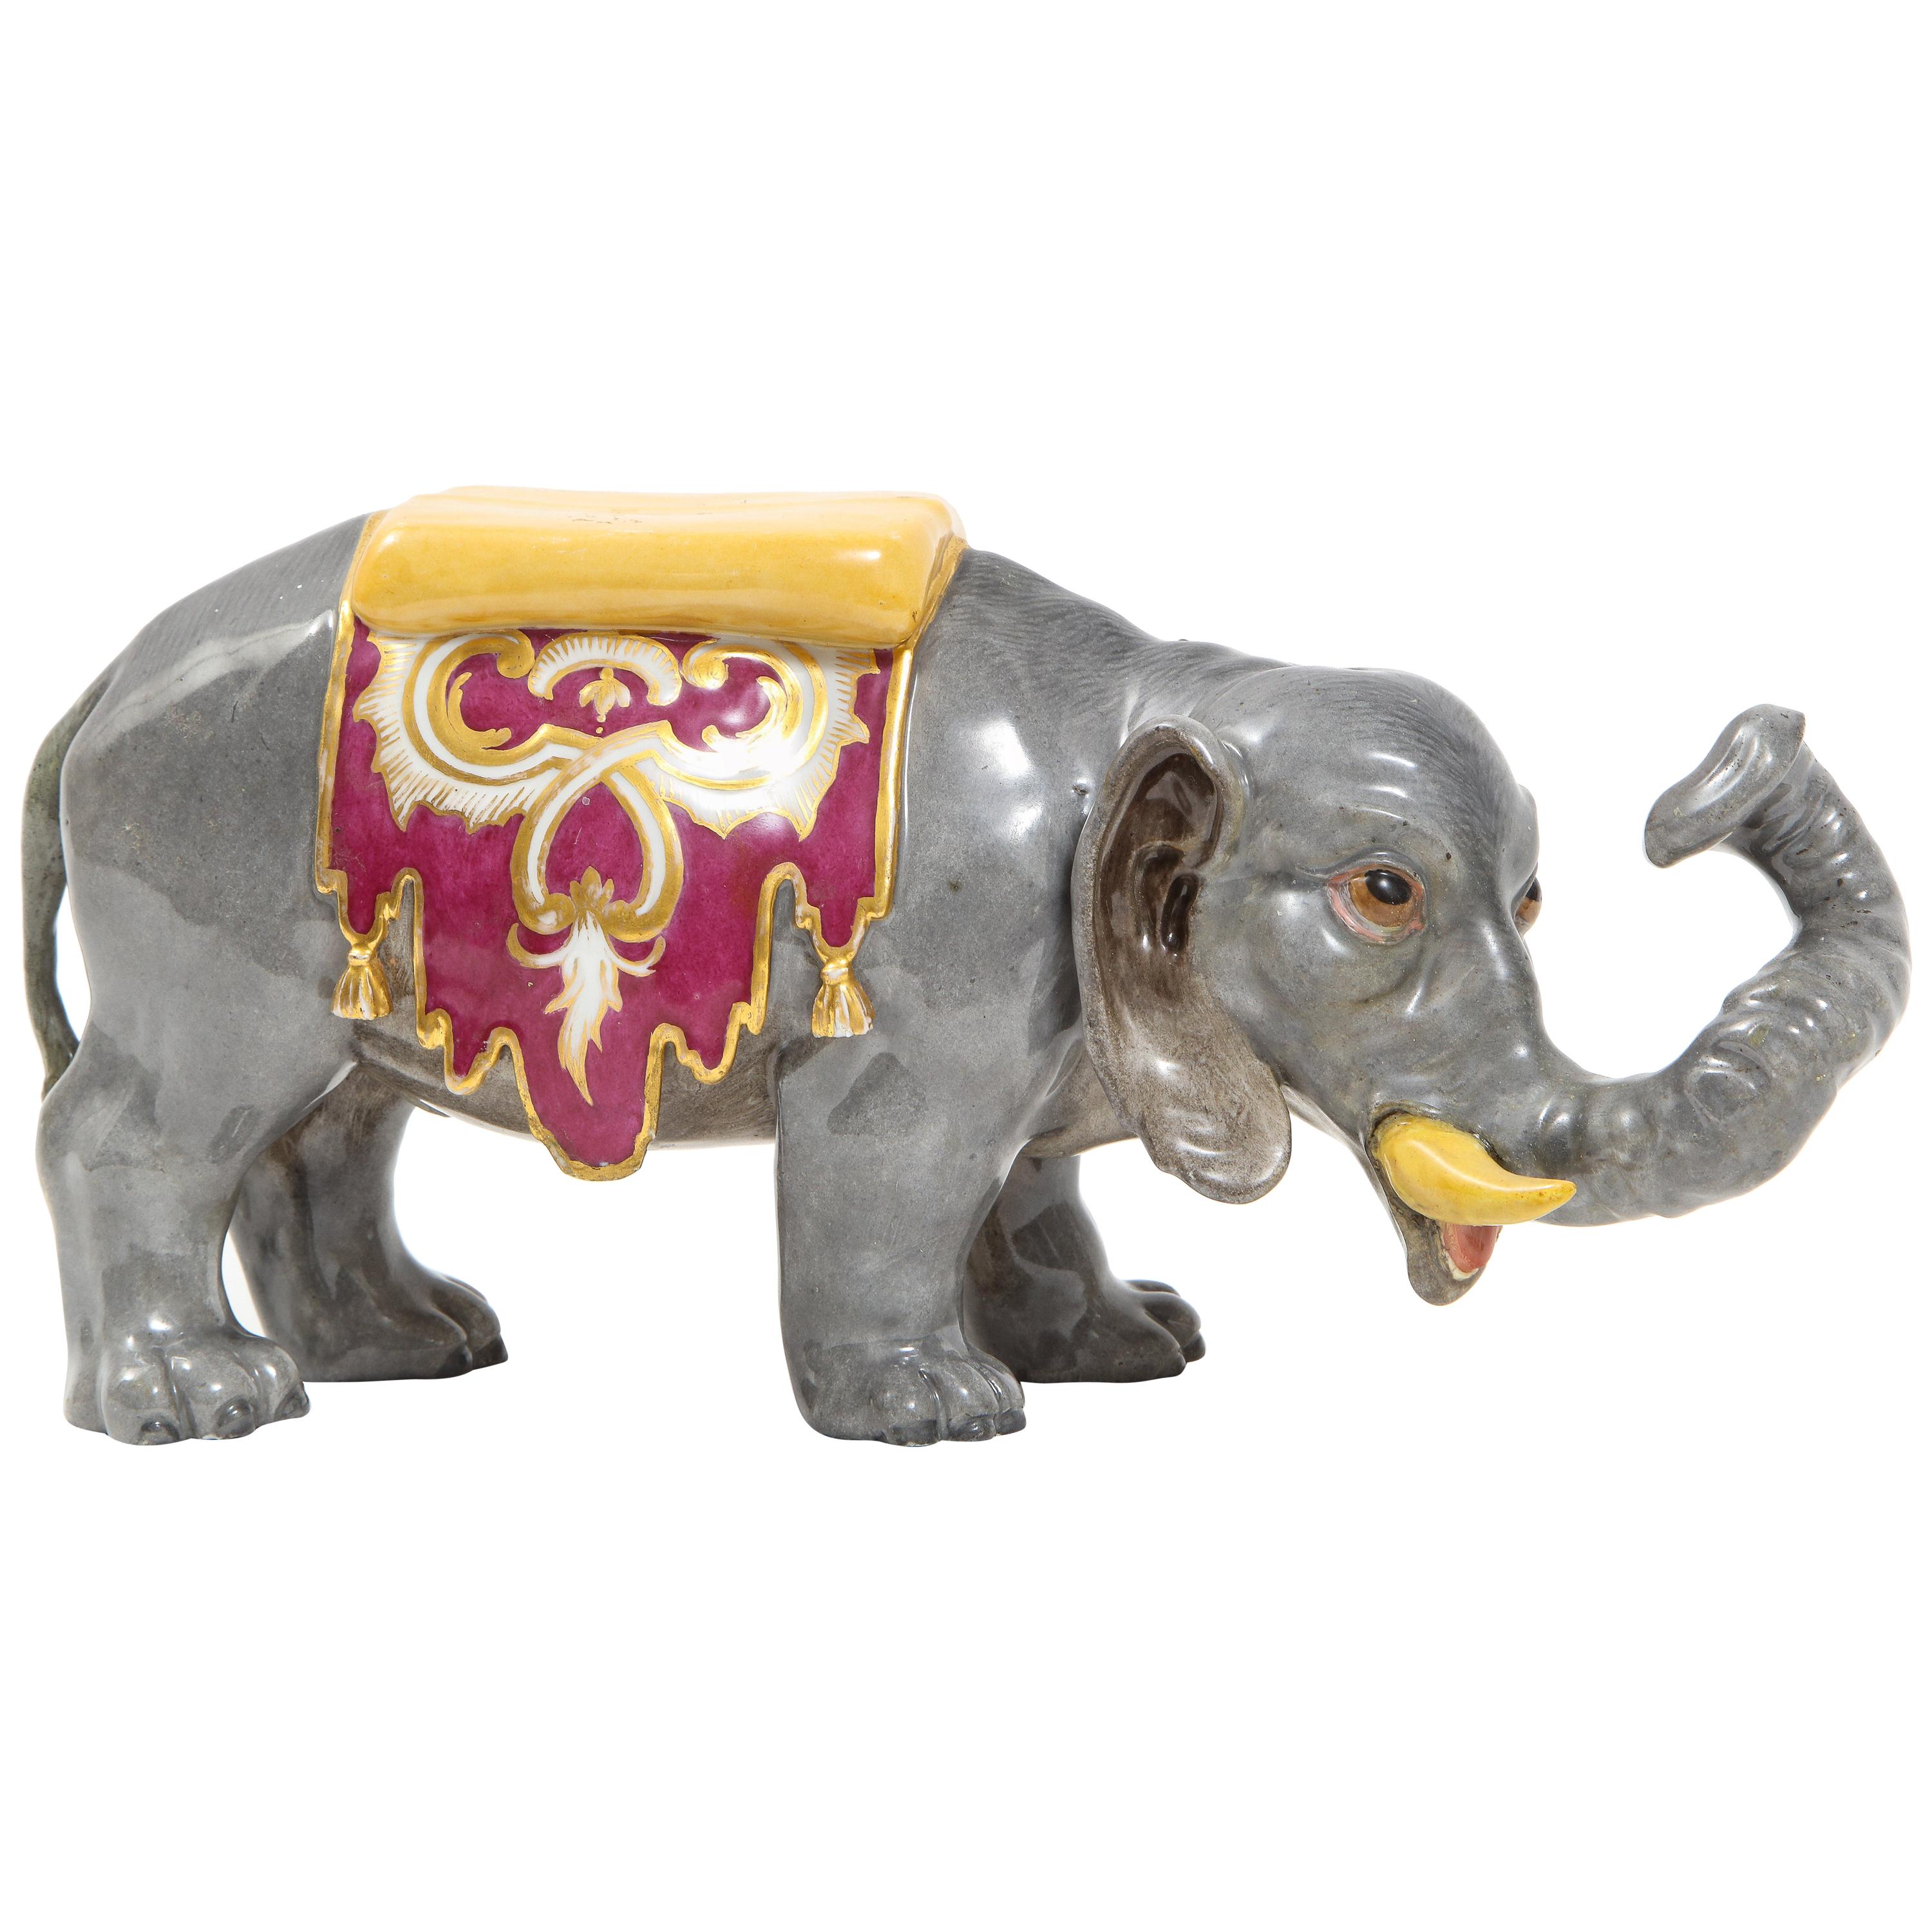 Modèle en porcelaine de Meissen peint à la main d'un éléphant indien avec une selle